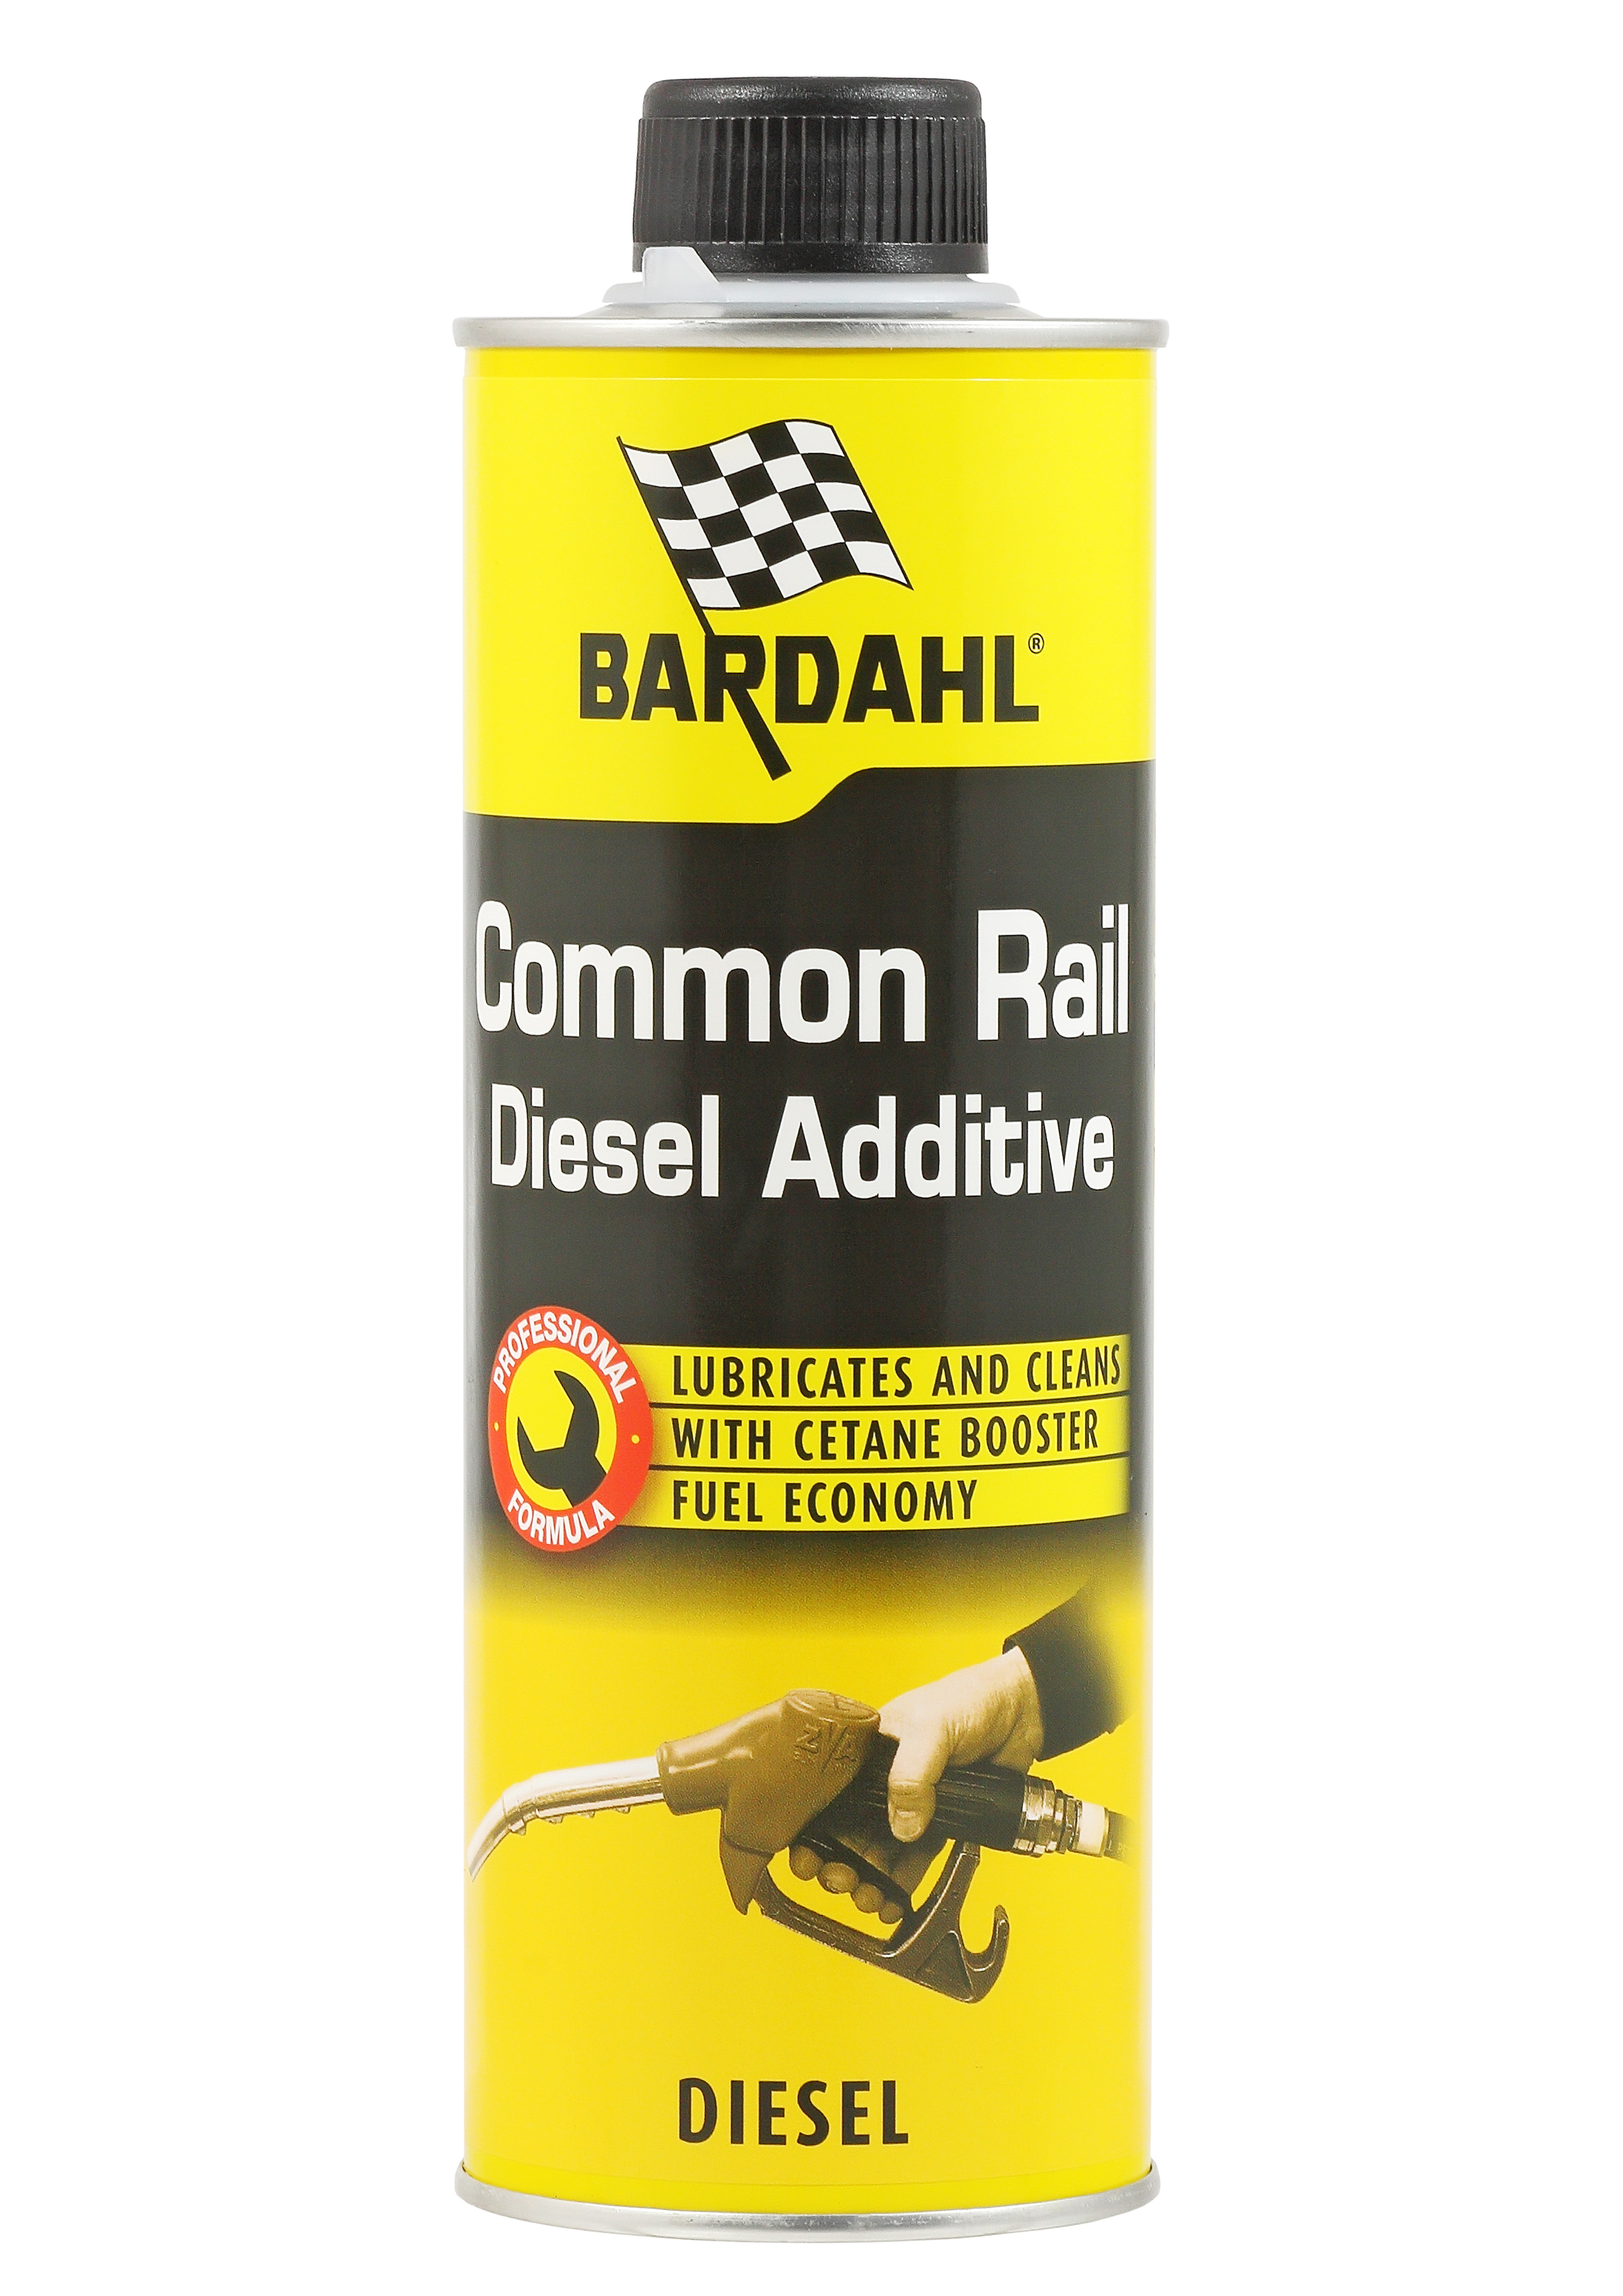 COMMON RAIL DIESEL ADDITIVE Присадка в дизельное топливо 0,5л - BARDAHL 1072